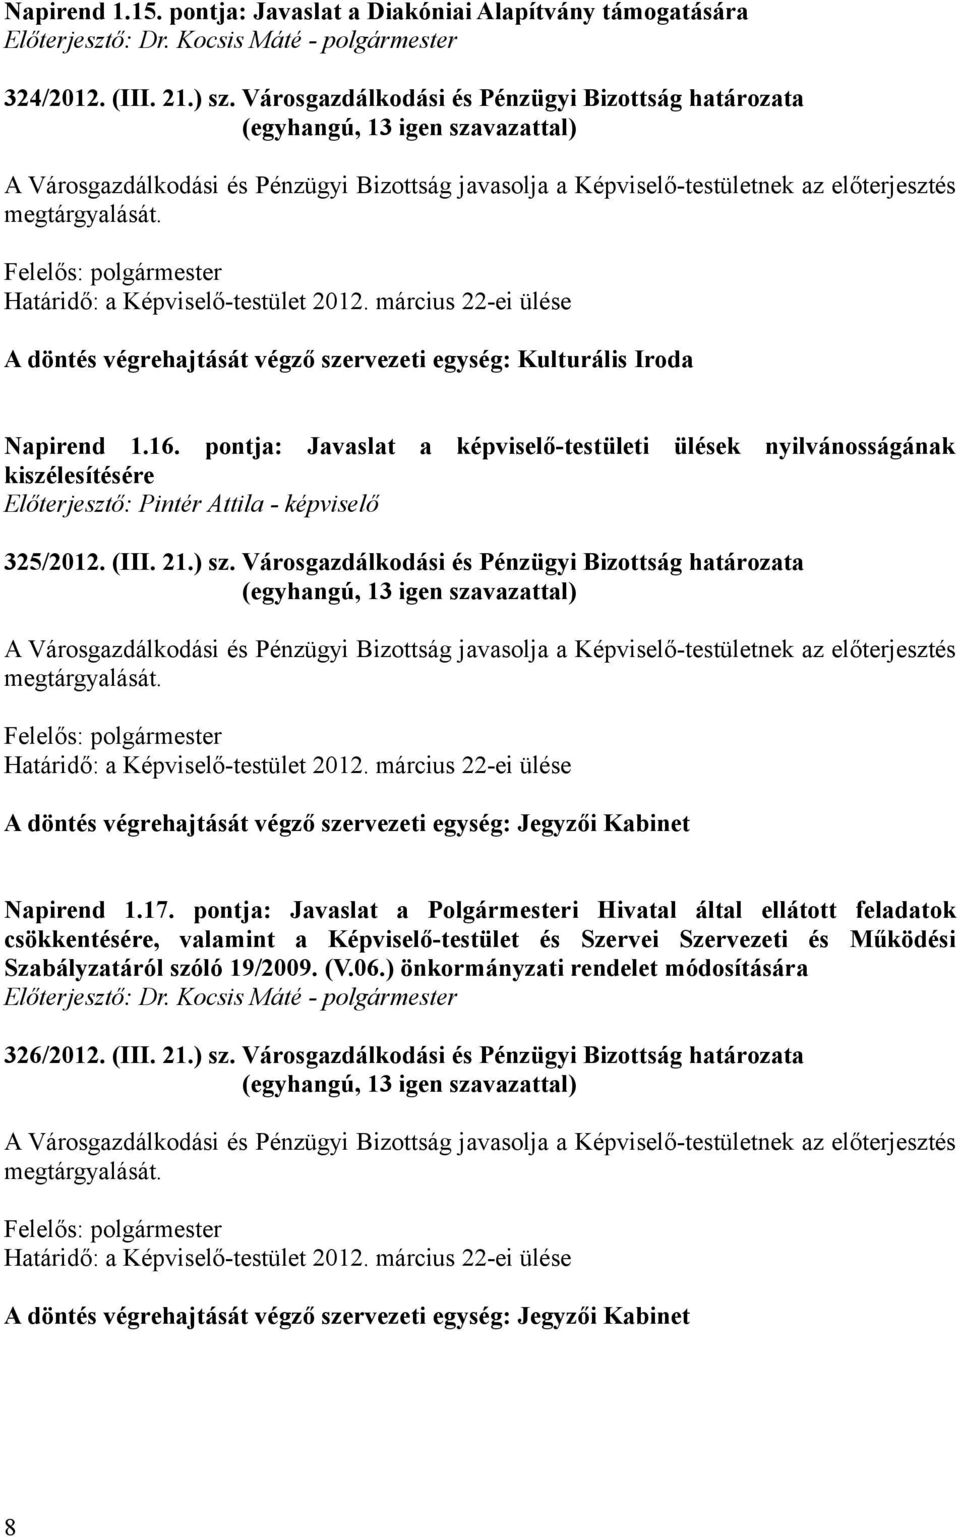 pontja: Javaslat a képviselő-testületi ülések nyilvánosságának kiszélesítésére Előterjesztő: Pintér Attila - képviselő 325/2012. (III. 21.) sz.